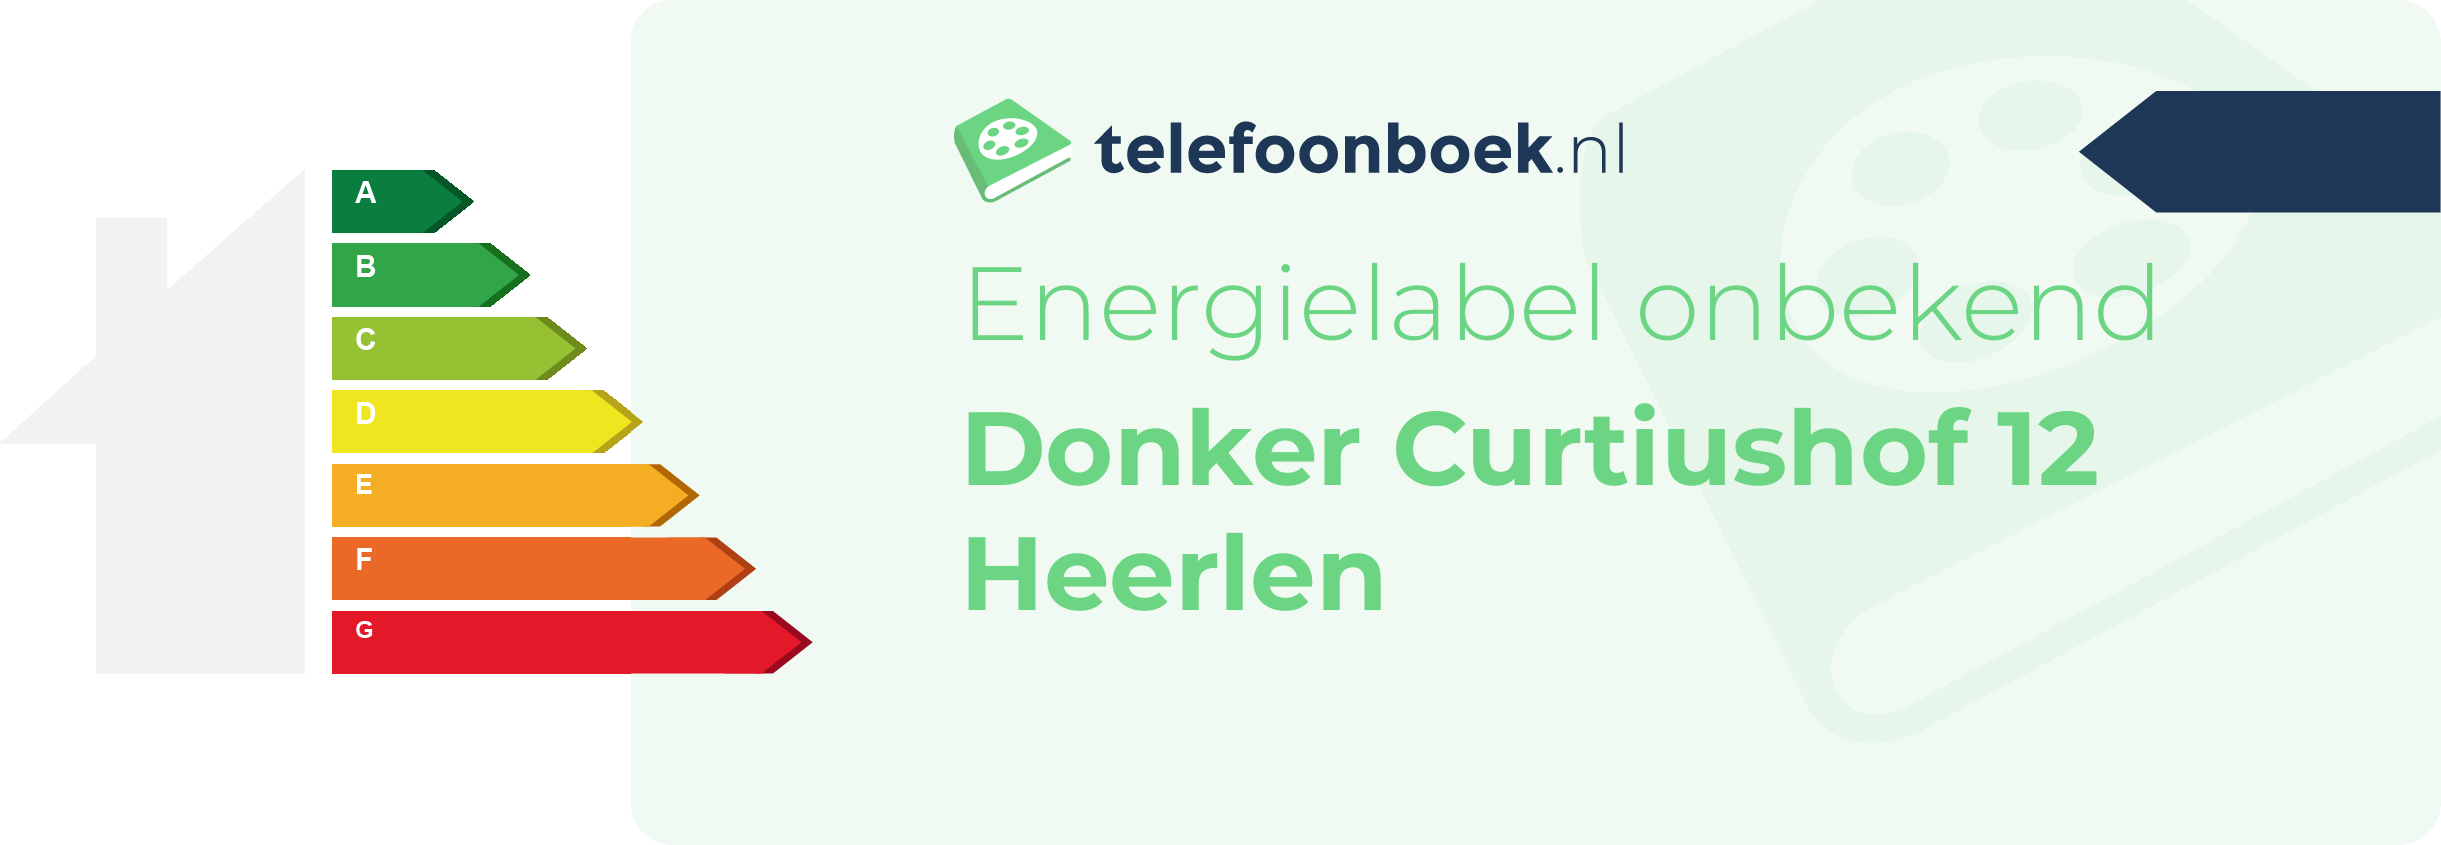 Energielabel Donker Curtiushof 12 Heerlen